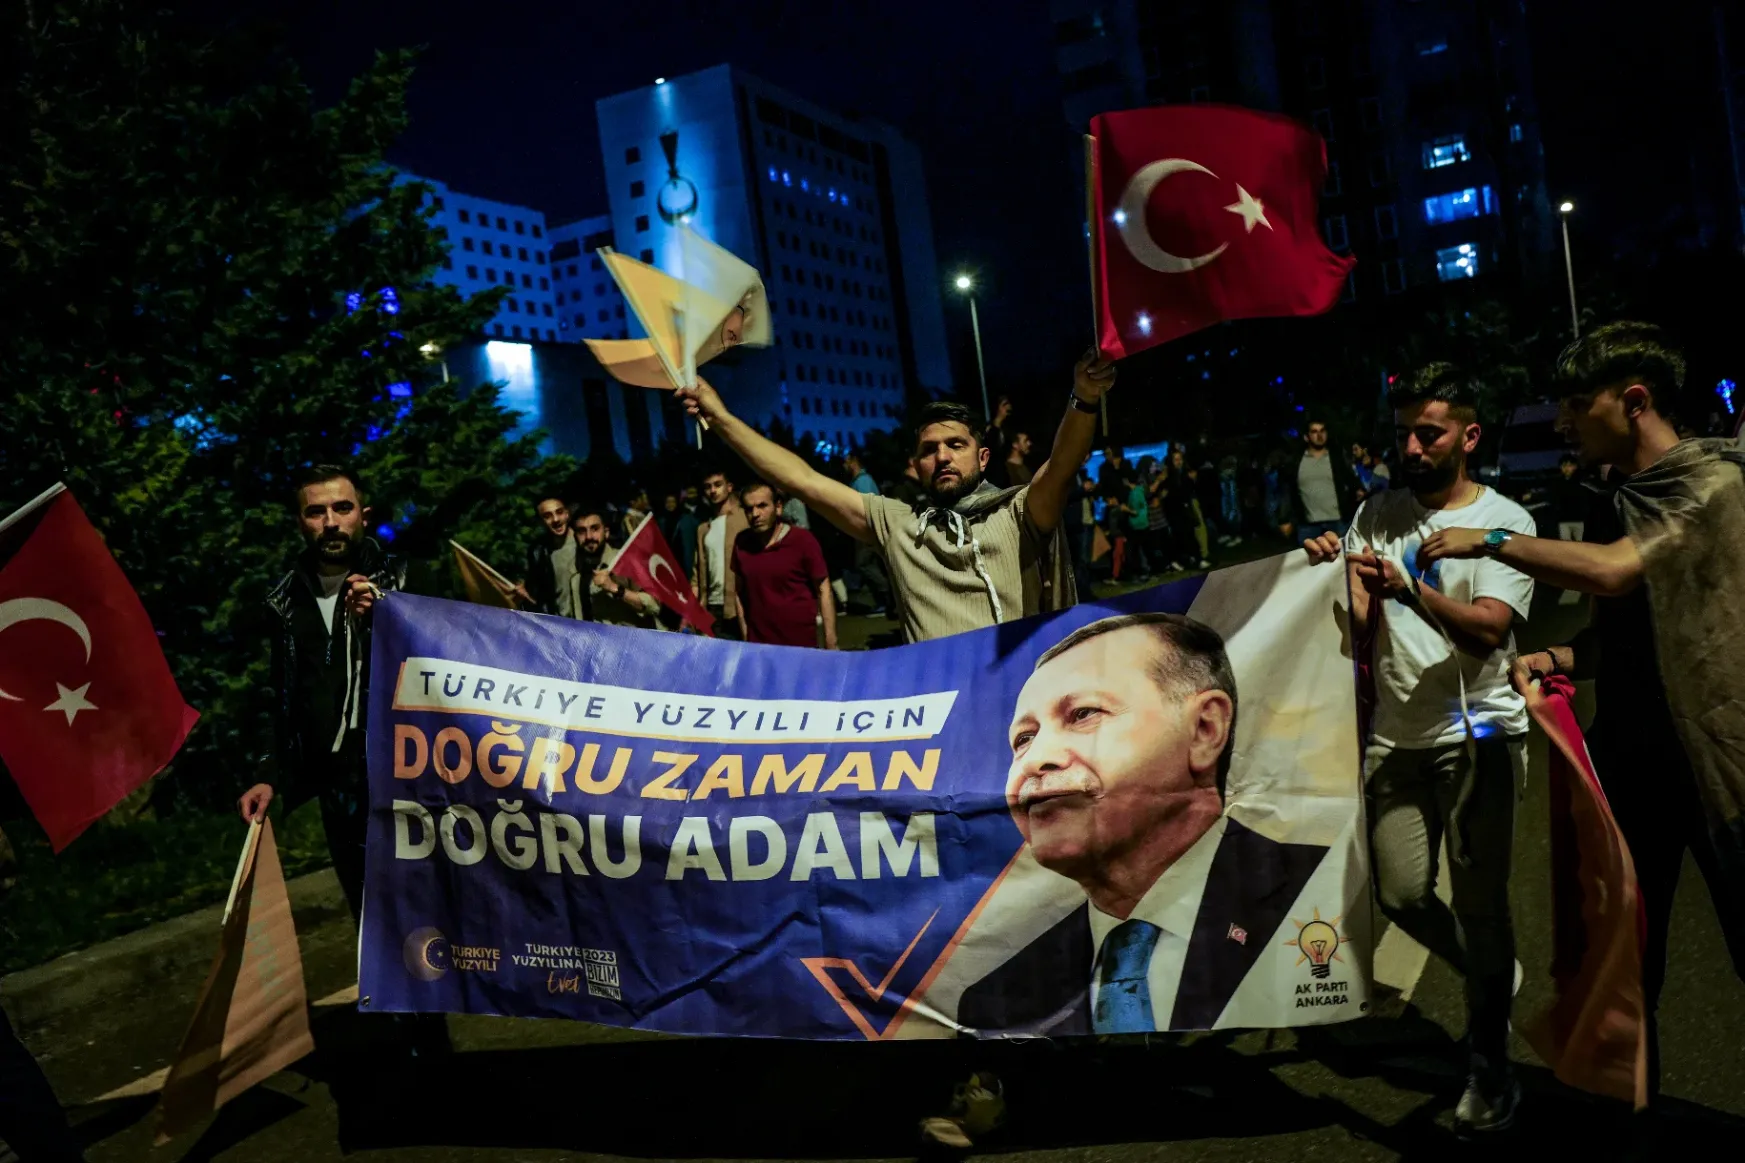 Erdoğant éltető gyerekek, dudáló autók, kesergő ellenzék: két világra szakadt Ankara a török elnök győzelmével